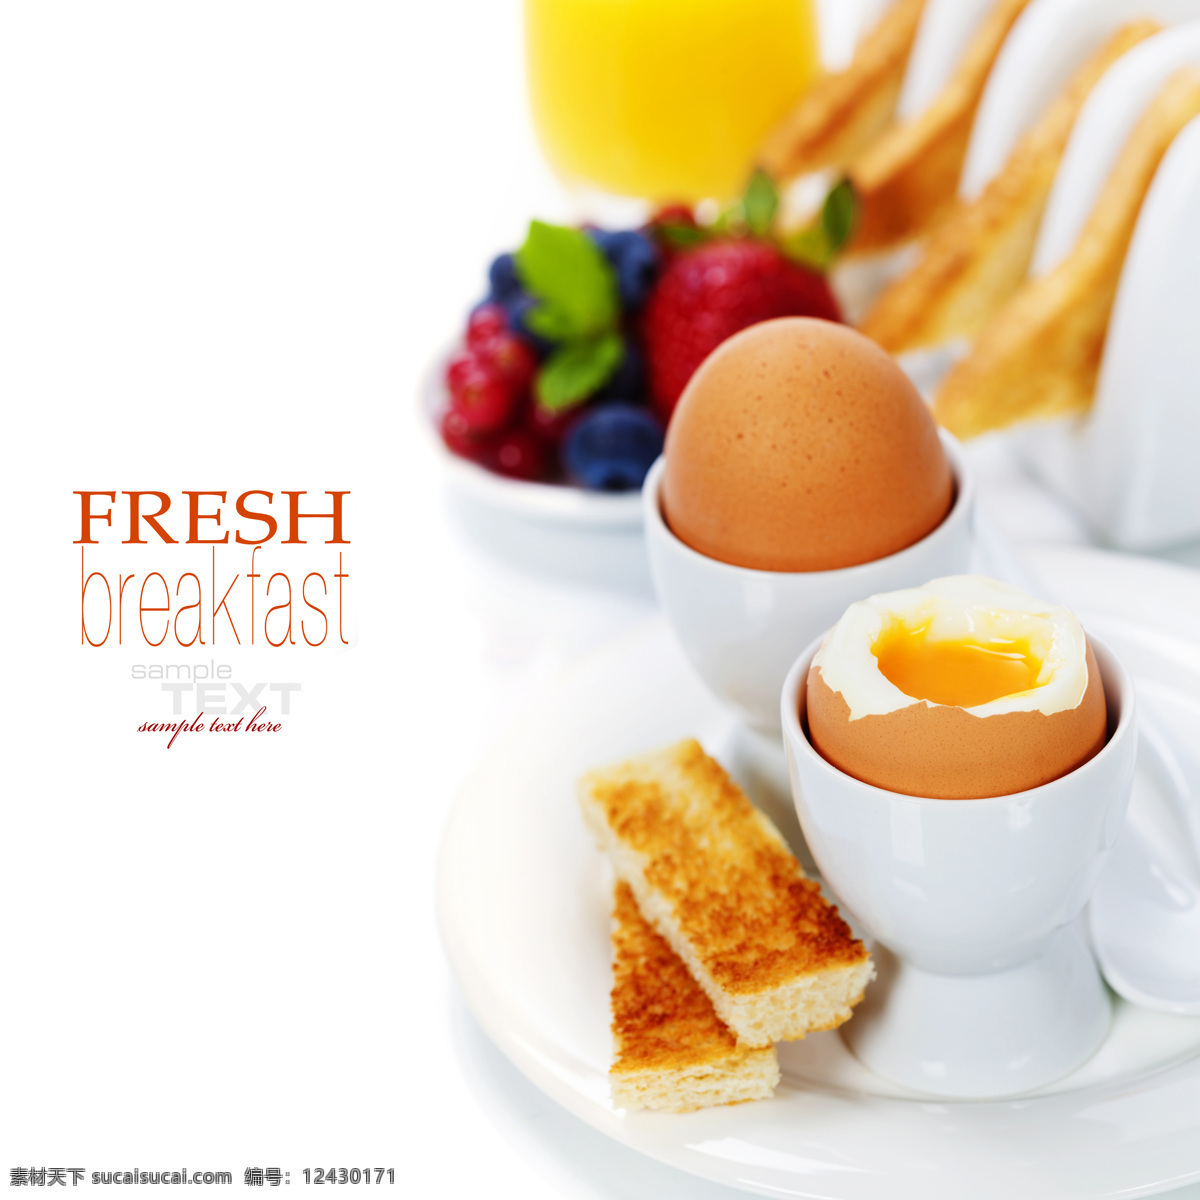 鸡蛋面包美食 鸡蛋 面包 营养早餐 草莓 蓝莓 美味 美食 中华美食 餐饮美食 白色